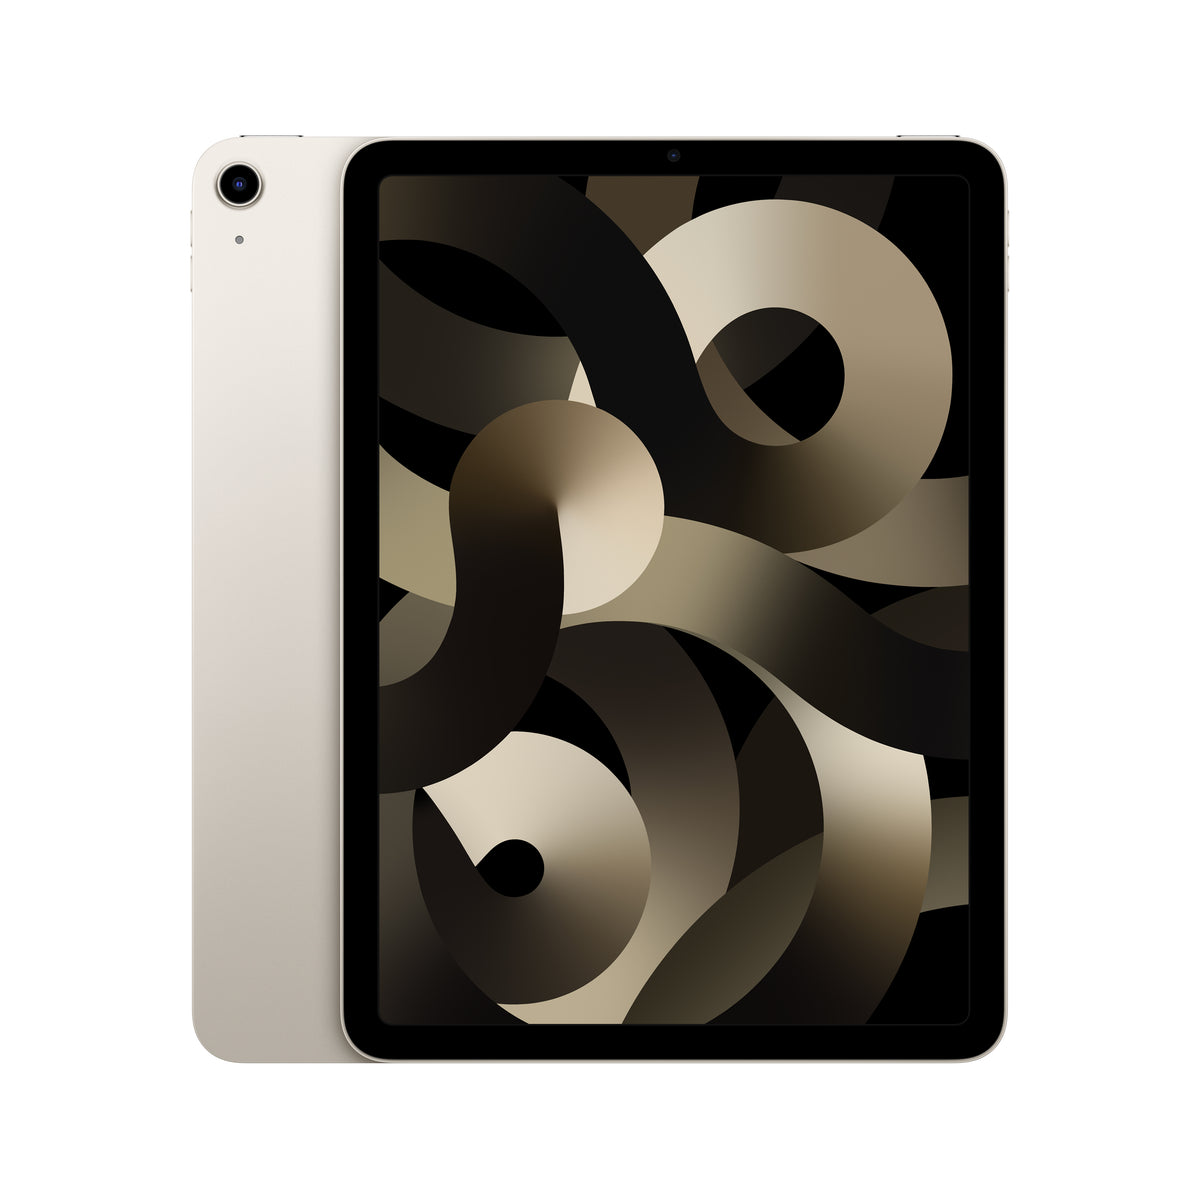 10.9 Inch iPad Air WI-FI + Cell 256GB Starlight